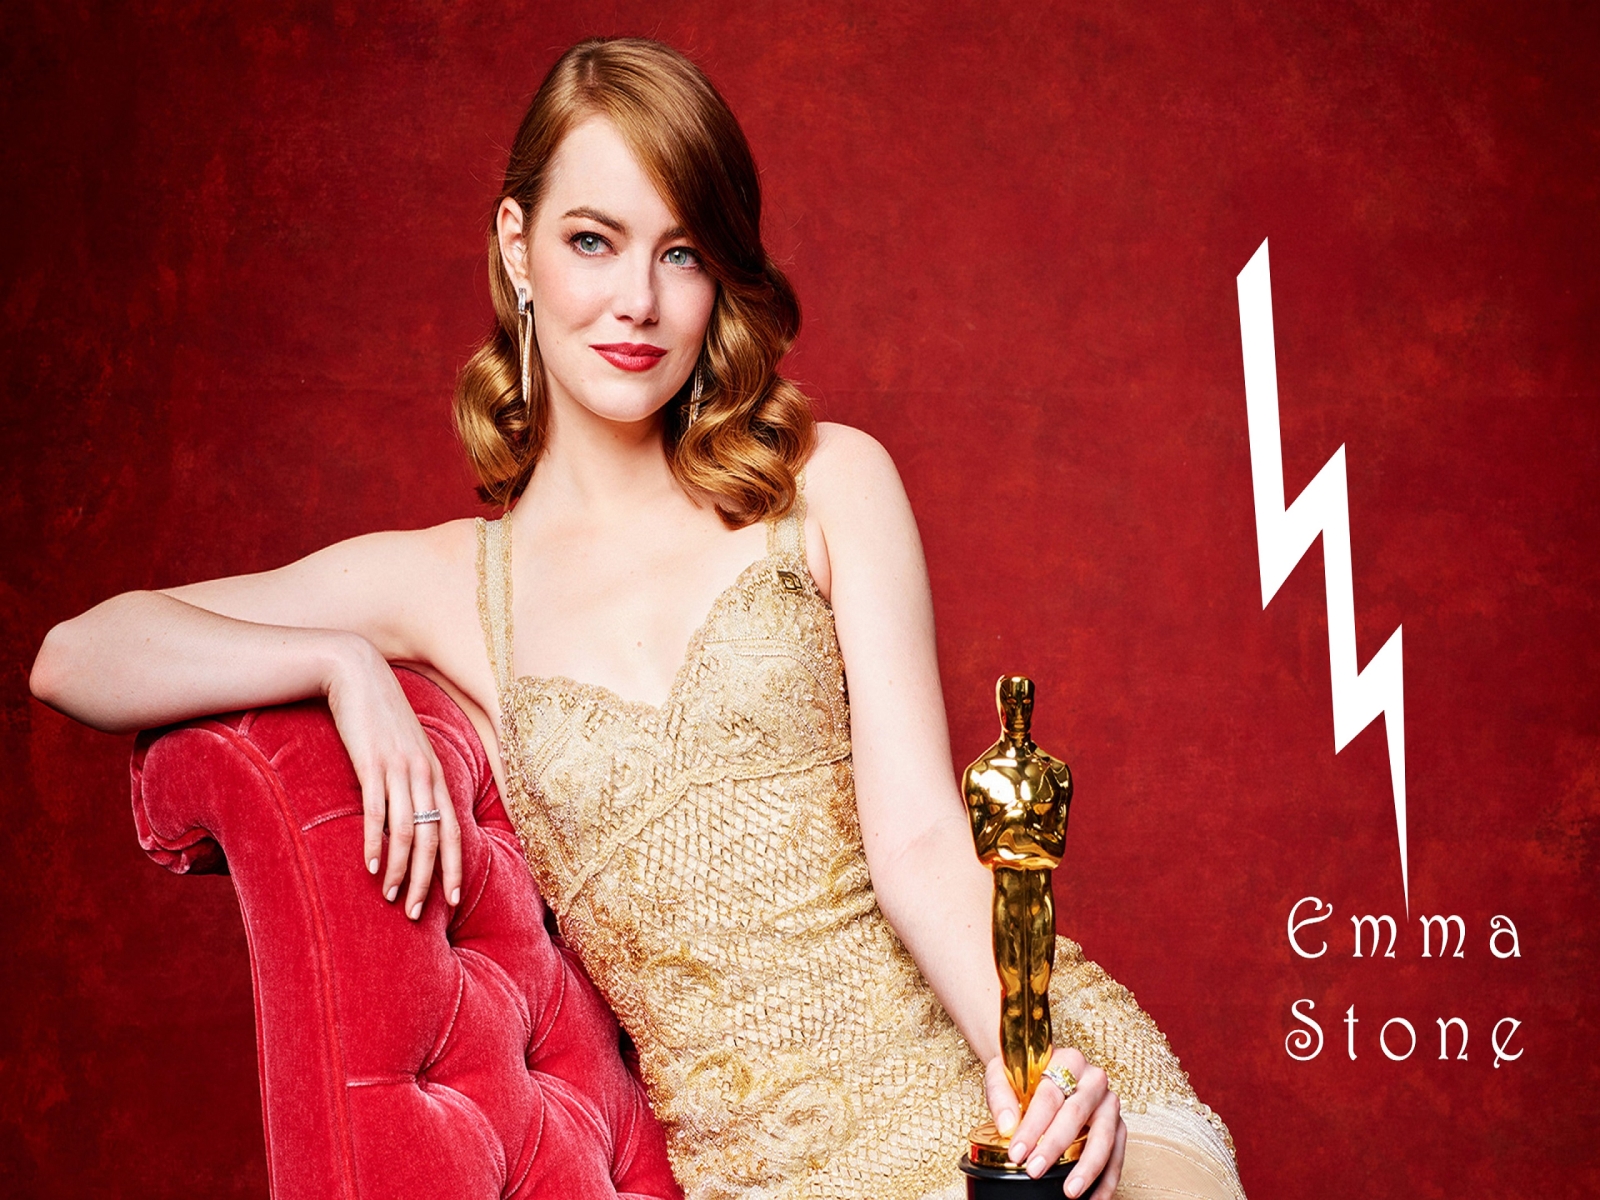 Emma Stone Oscar Winner for 1600 x 1200 resolution